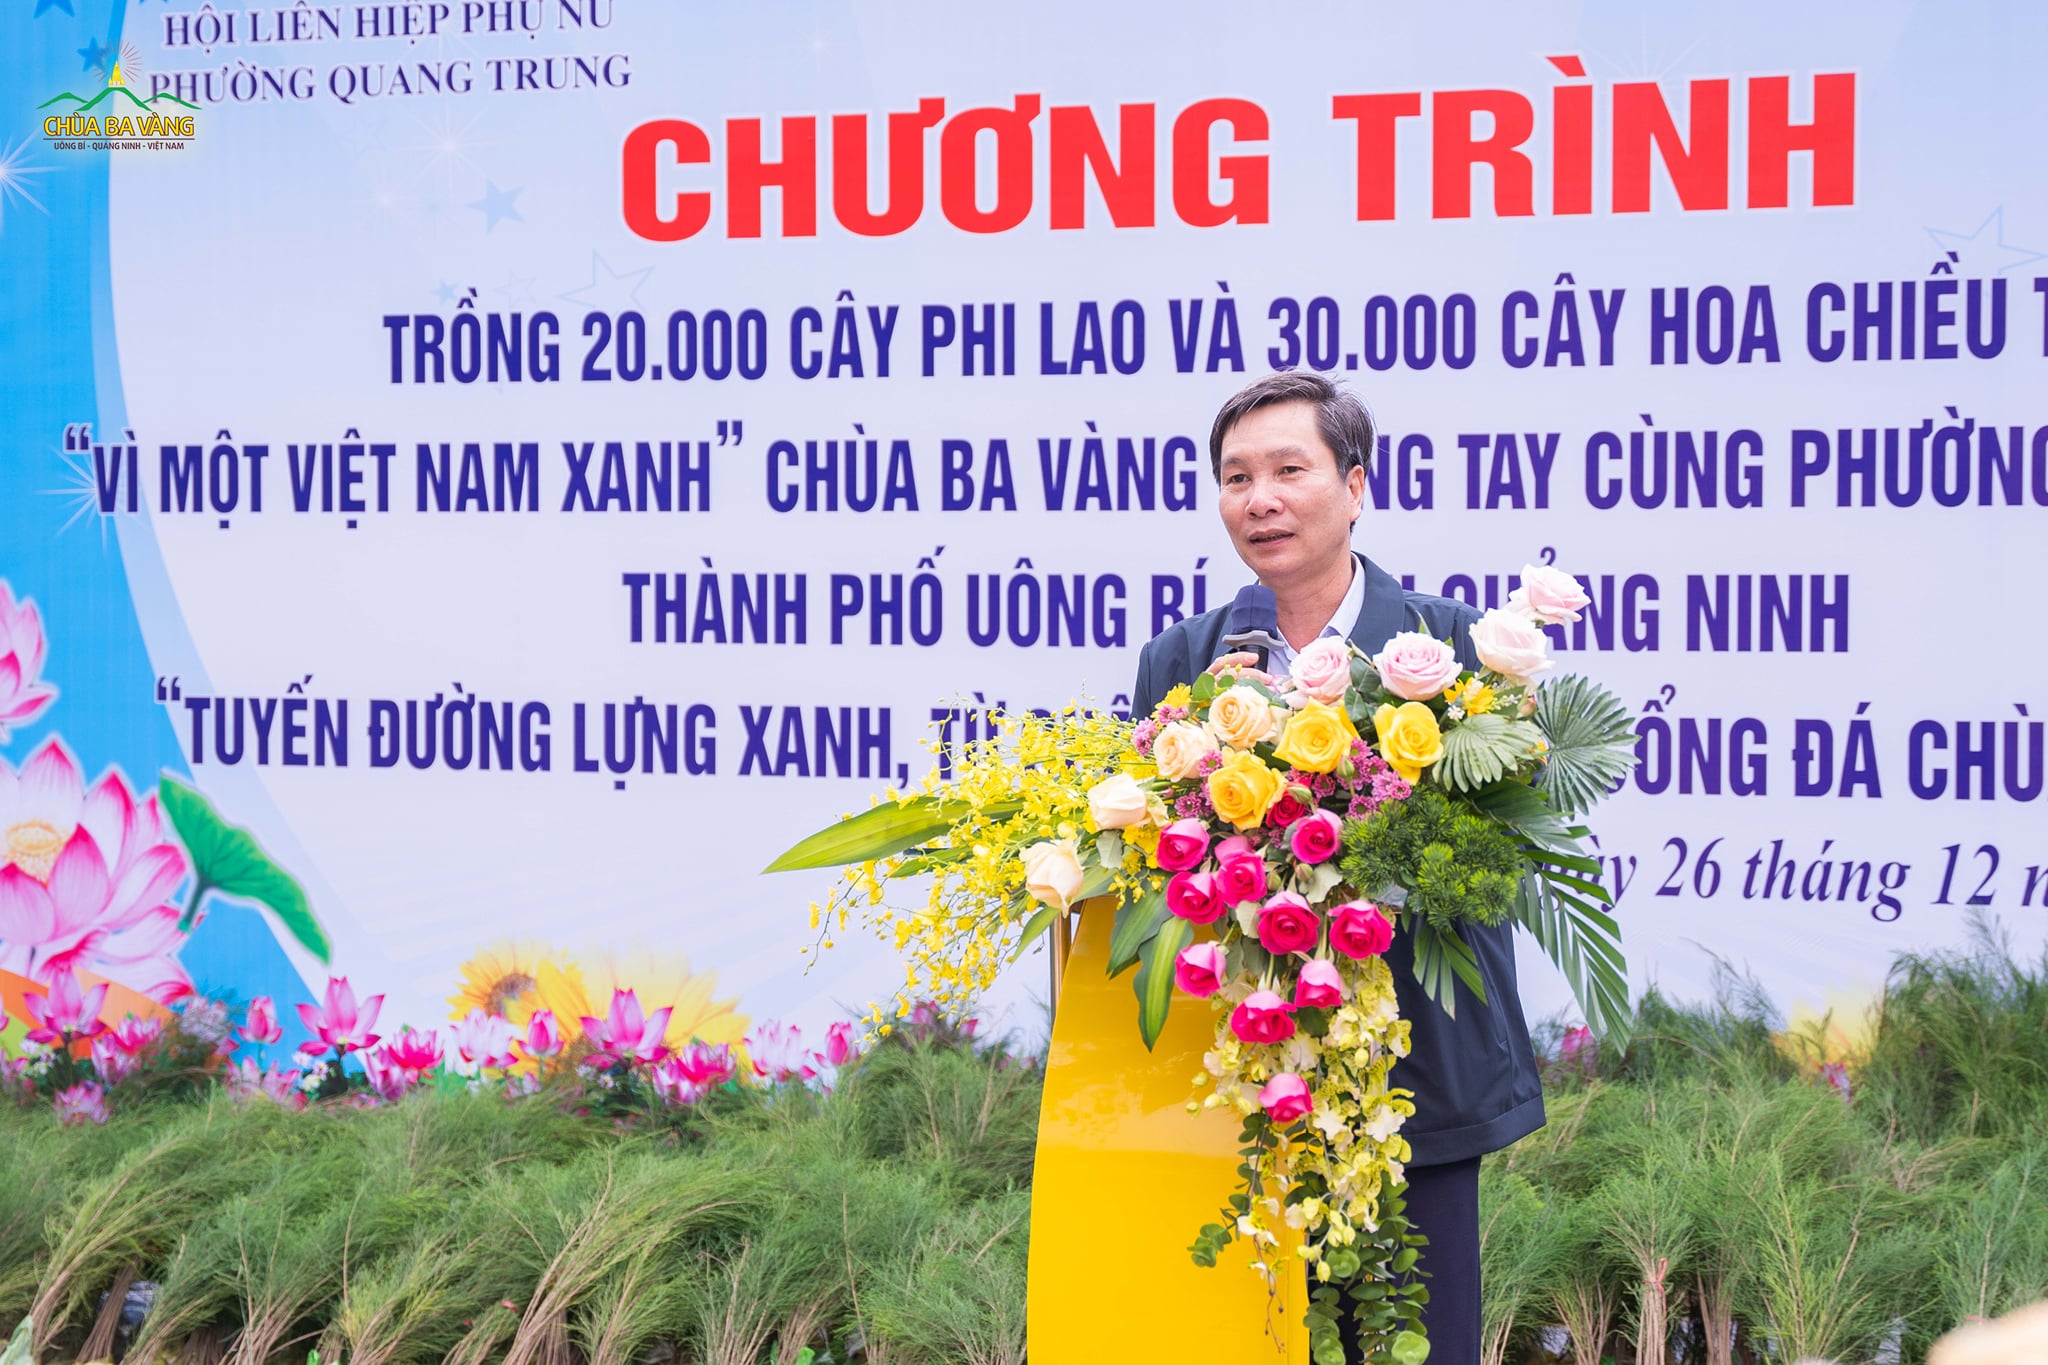 Ông Nguyễn Văn Thành - Ủy viên BTV Thành ủy, Phó Chủ tịch Thường trực UBND thành phố Uông Bí phát biểu tại chương trình